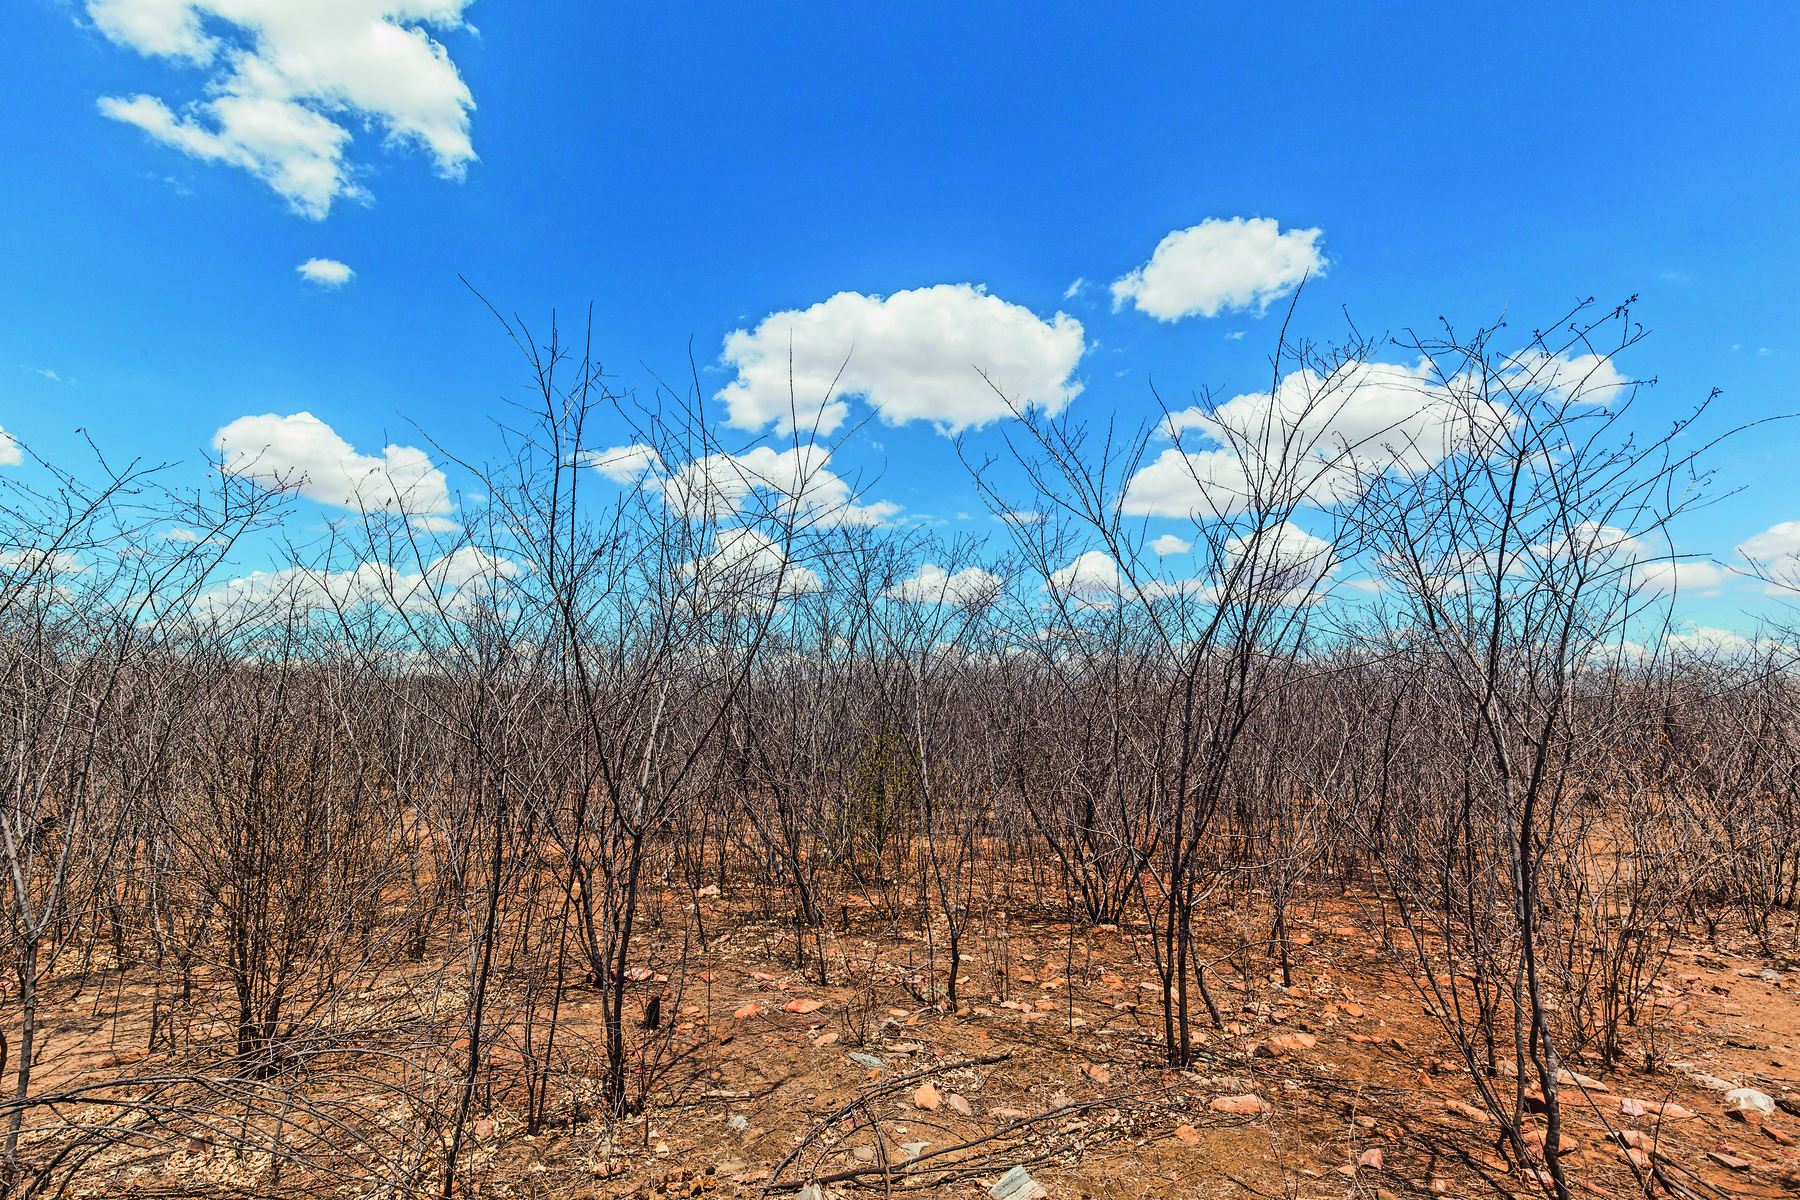 Fotografia. Vegetação seca e baixa, característica do semiárido, sobre solo seco. Ao fundo, céu azul com poucas nuvens.